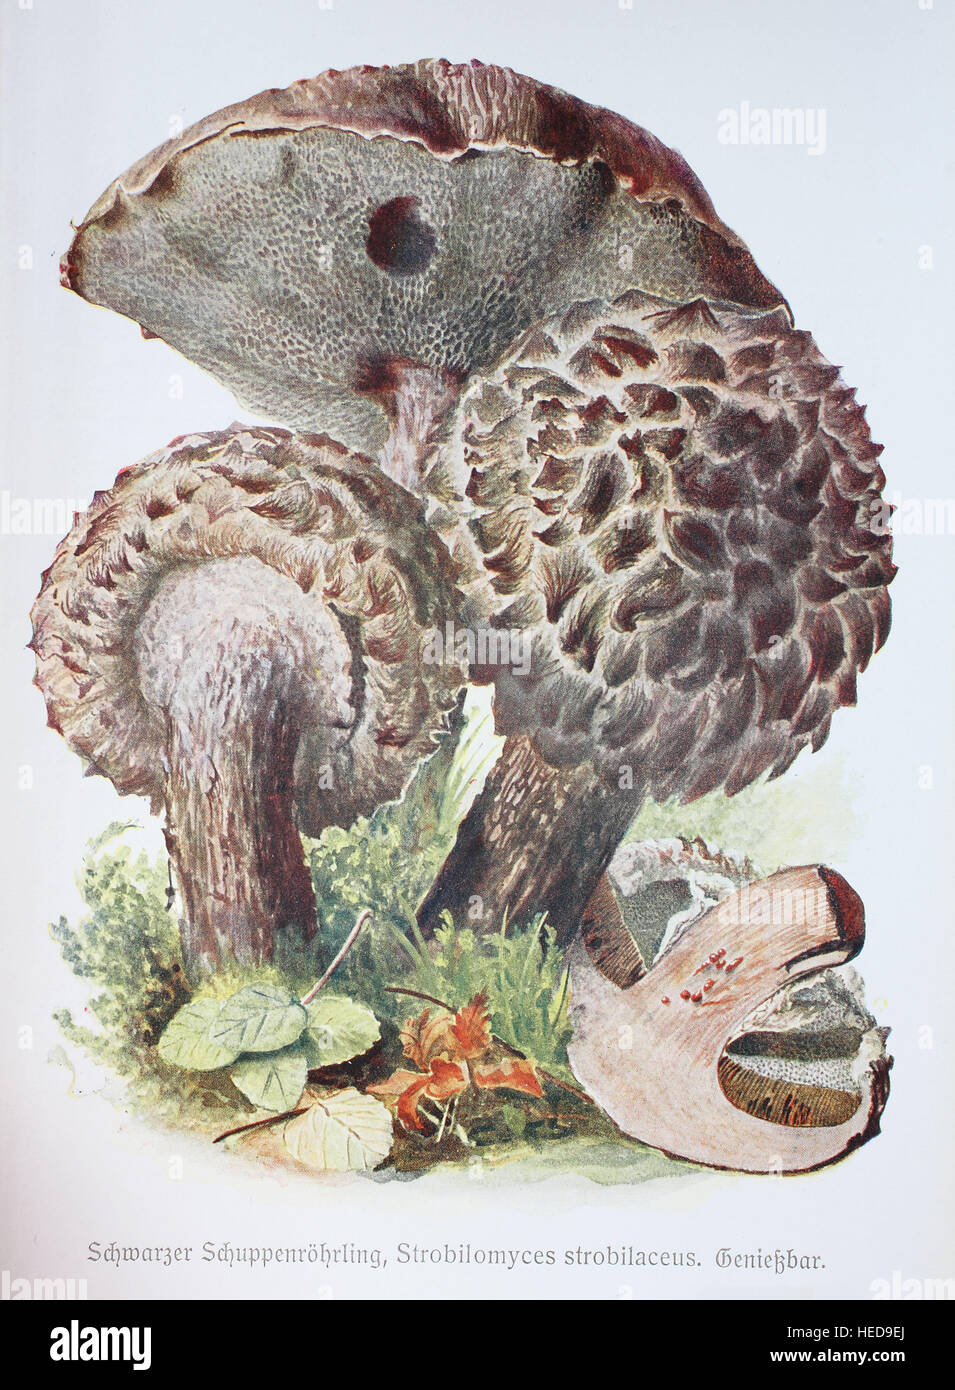 Schwarzer Schuppenroehrling, Strobilomyces strobilaceus, digitale Reproduktion einer Illustration von Emil Doerstling (1859-1940) Stock Photo